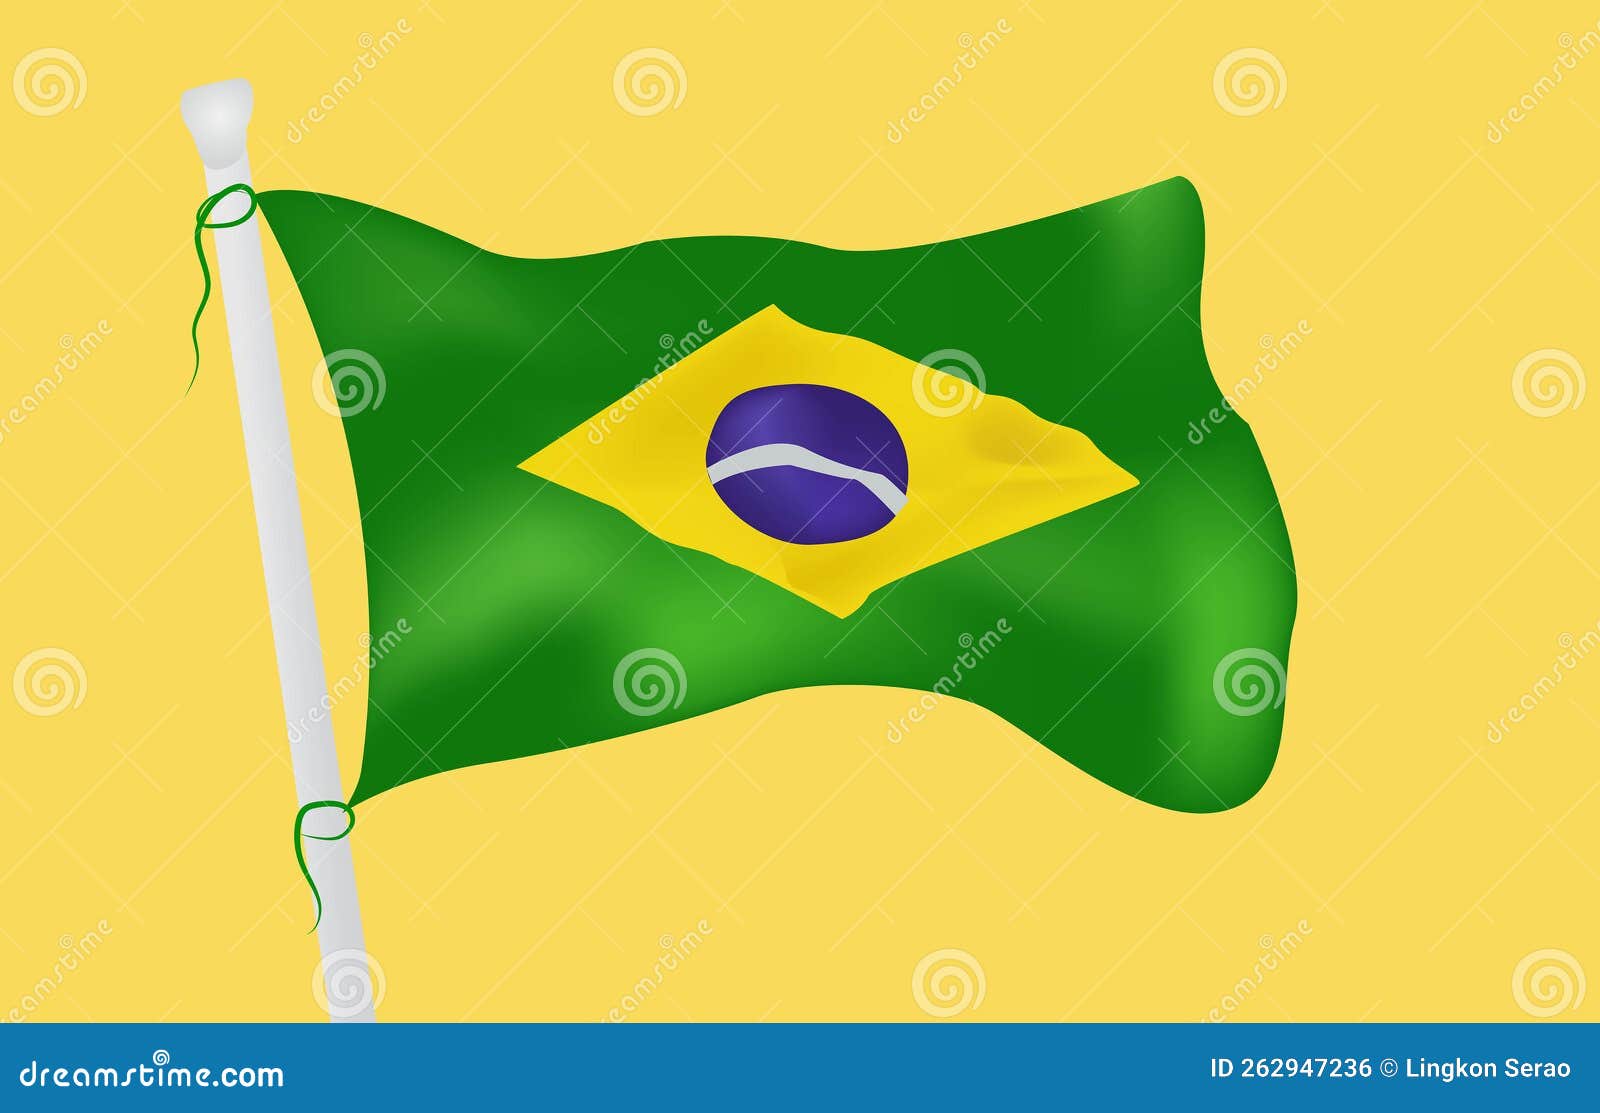 The Flying Flag of Brazil. World Champion Football Team, Brasil